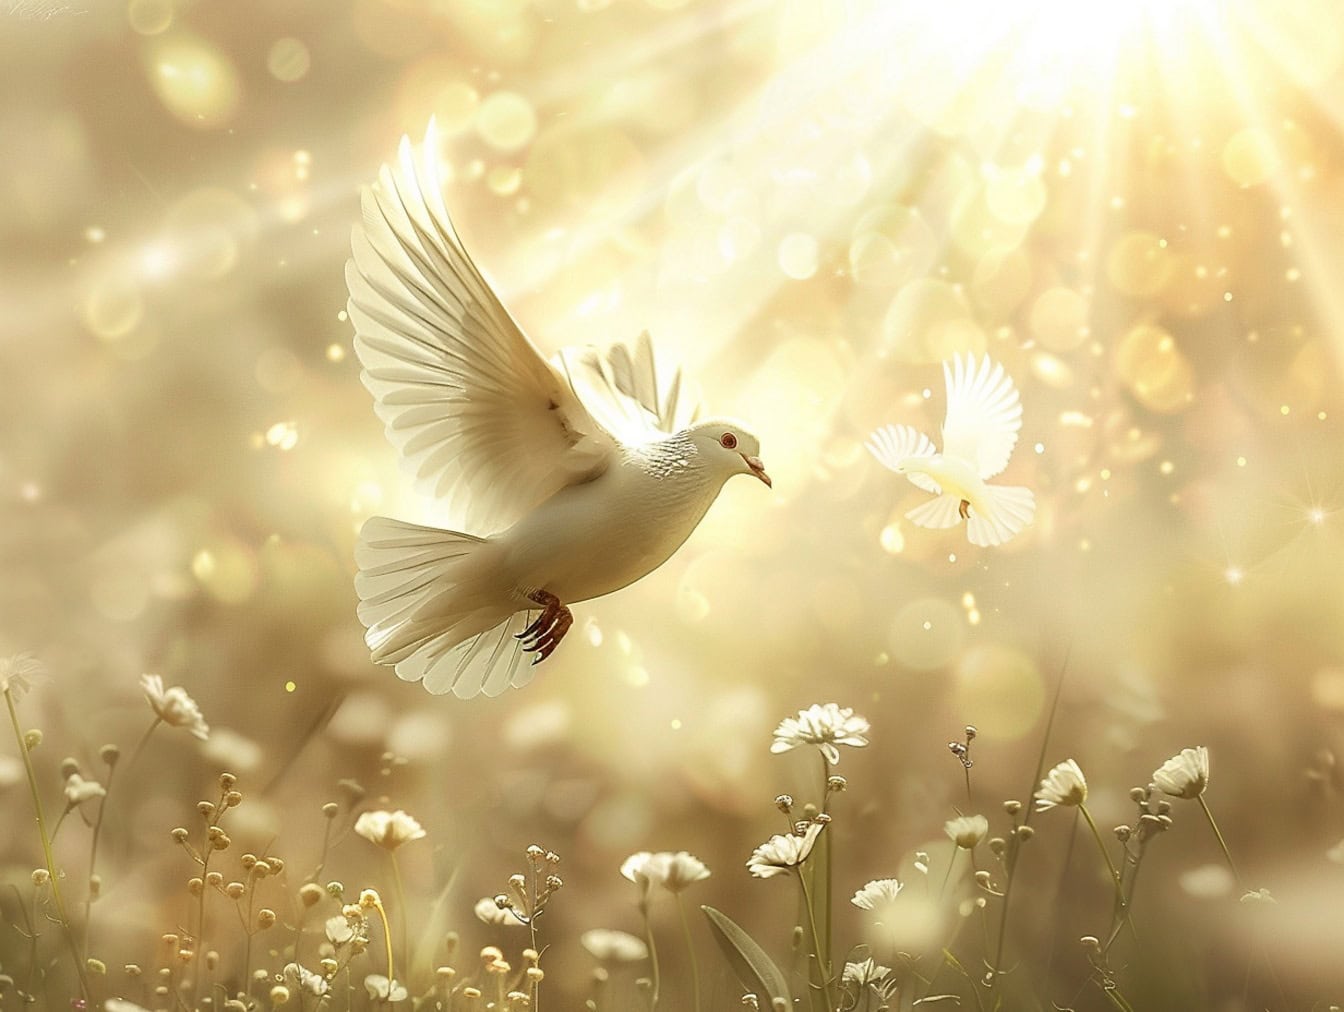 Weiße Taube, die in der Luft über weißen Blumen fliegt, mit hellen Sonnenstrahlen als Hintergrund, eine Illustration der Freiheit